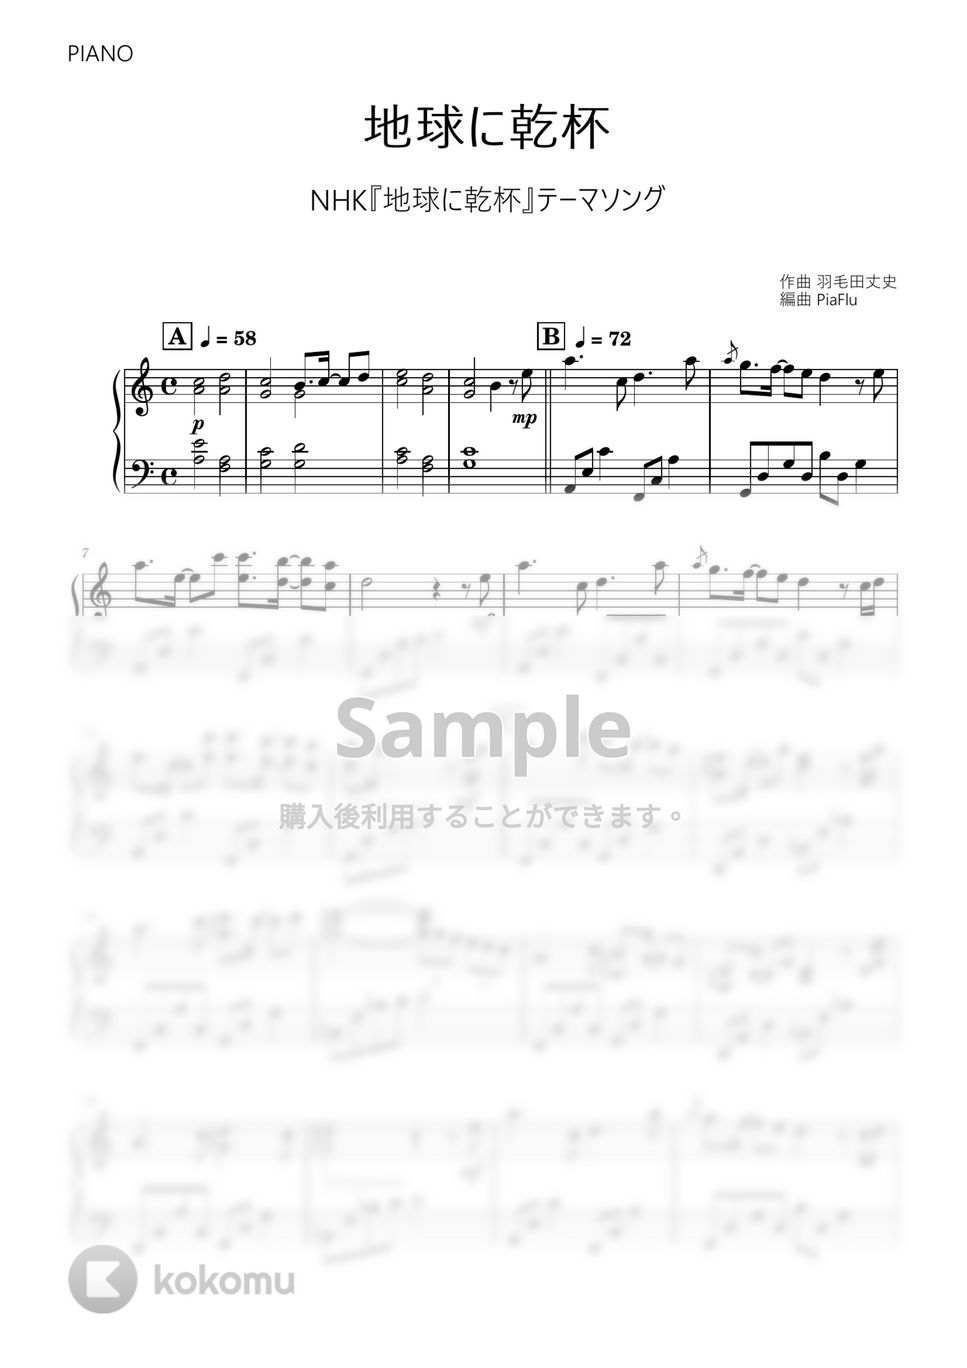 羽毛田丈史 - 地球に乾杯 (ピアノ) by PiaFlu